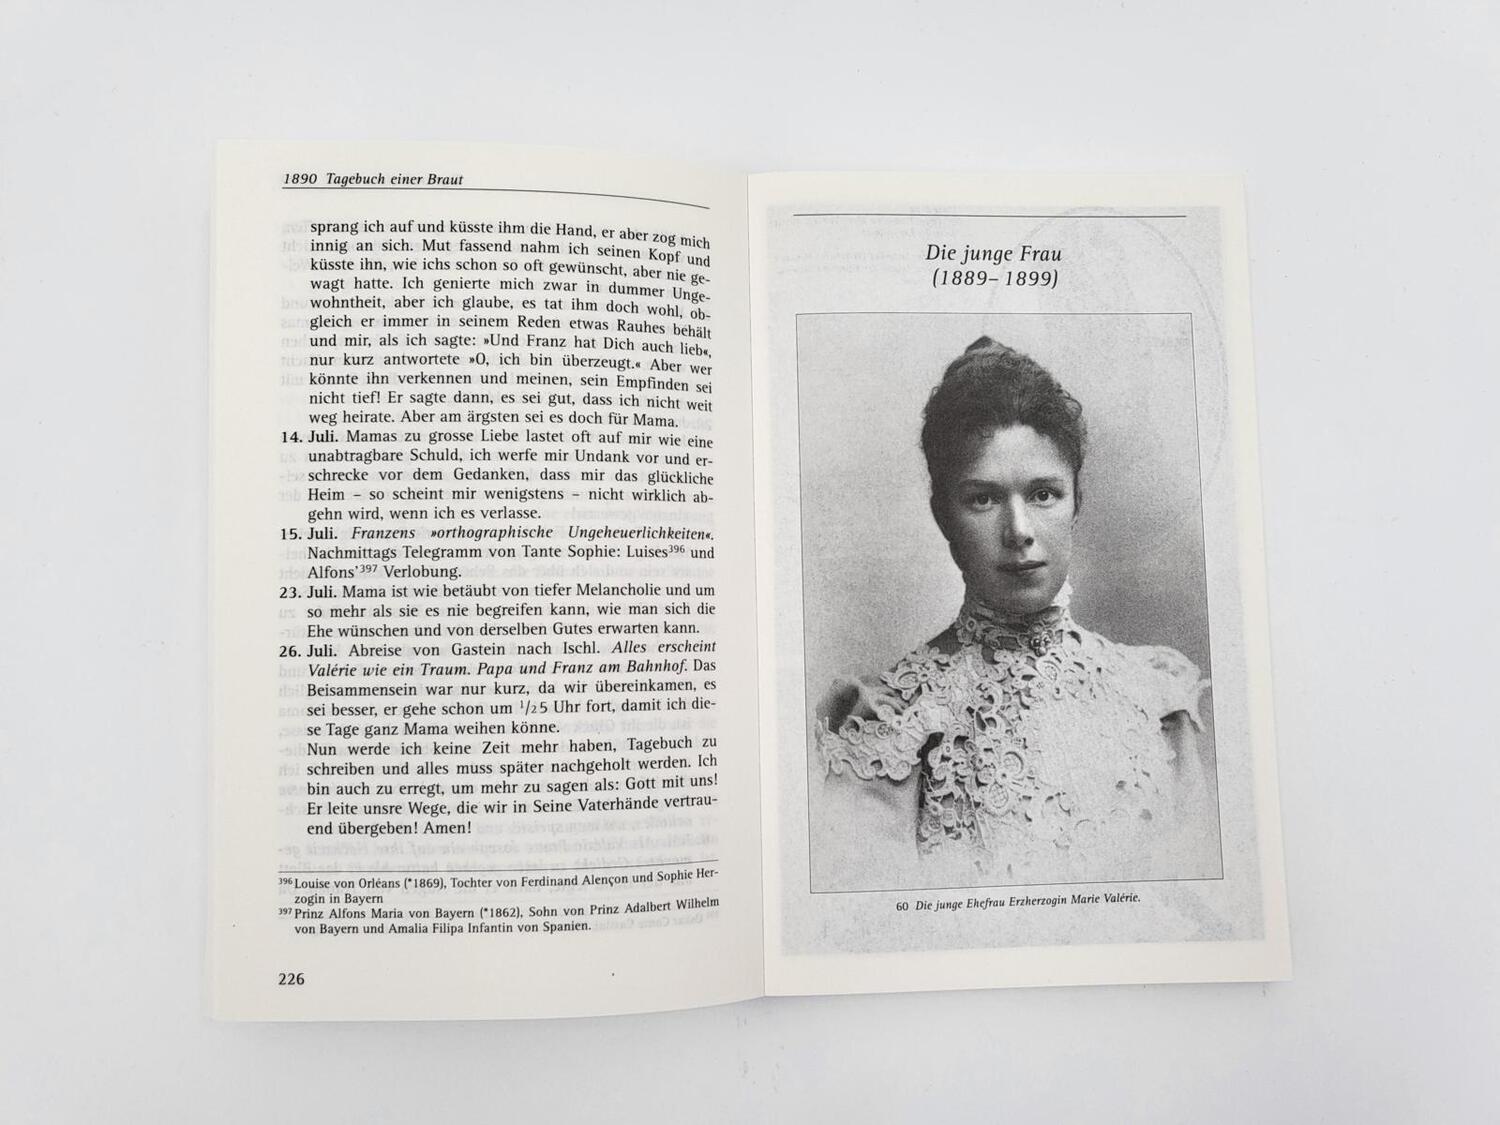 Bild: 9783492243643 | Das Tagebuch der Lieblingstochter von Kaiserin Elisabeth 1878-1899